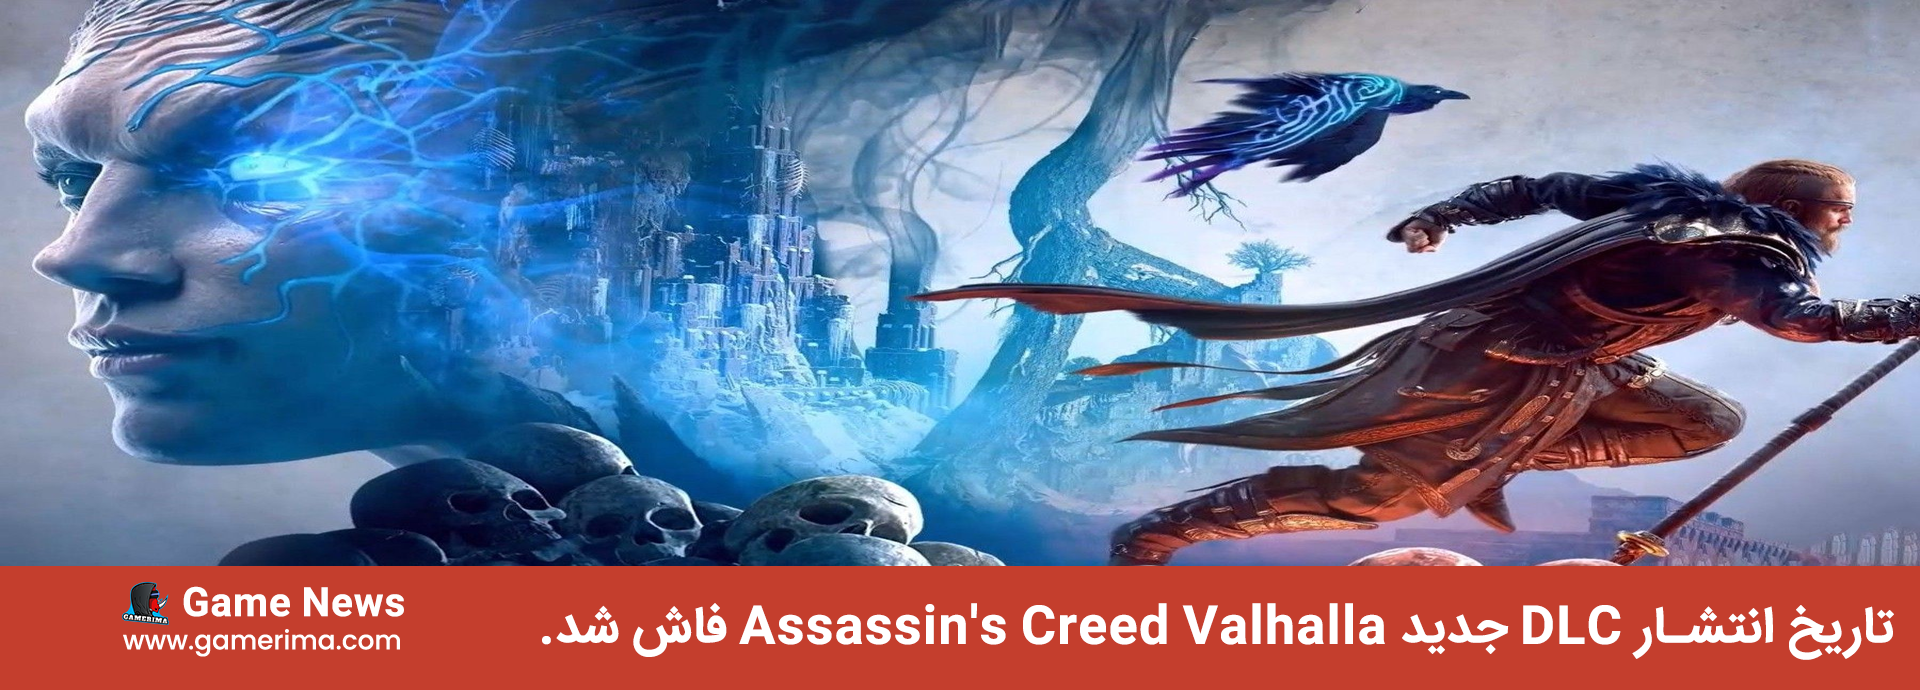 تاریخ انتشار DLC جدید Assassin’s Creed Valhalla فاش شد.۲۰۲۲